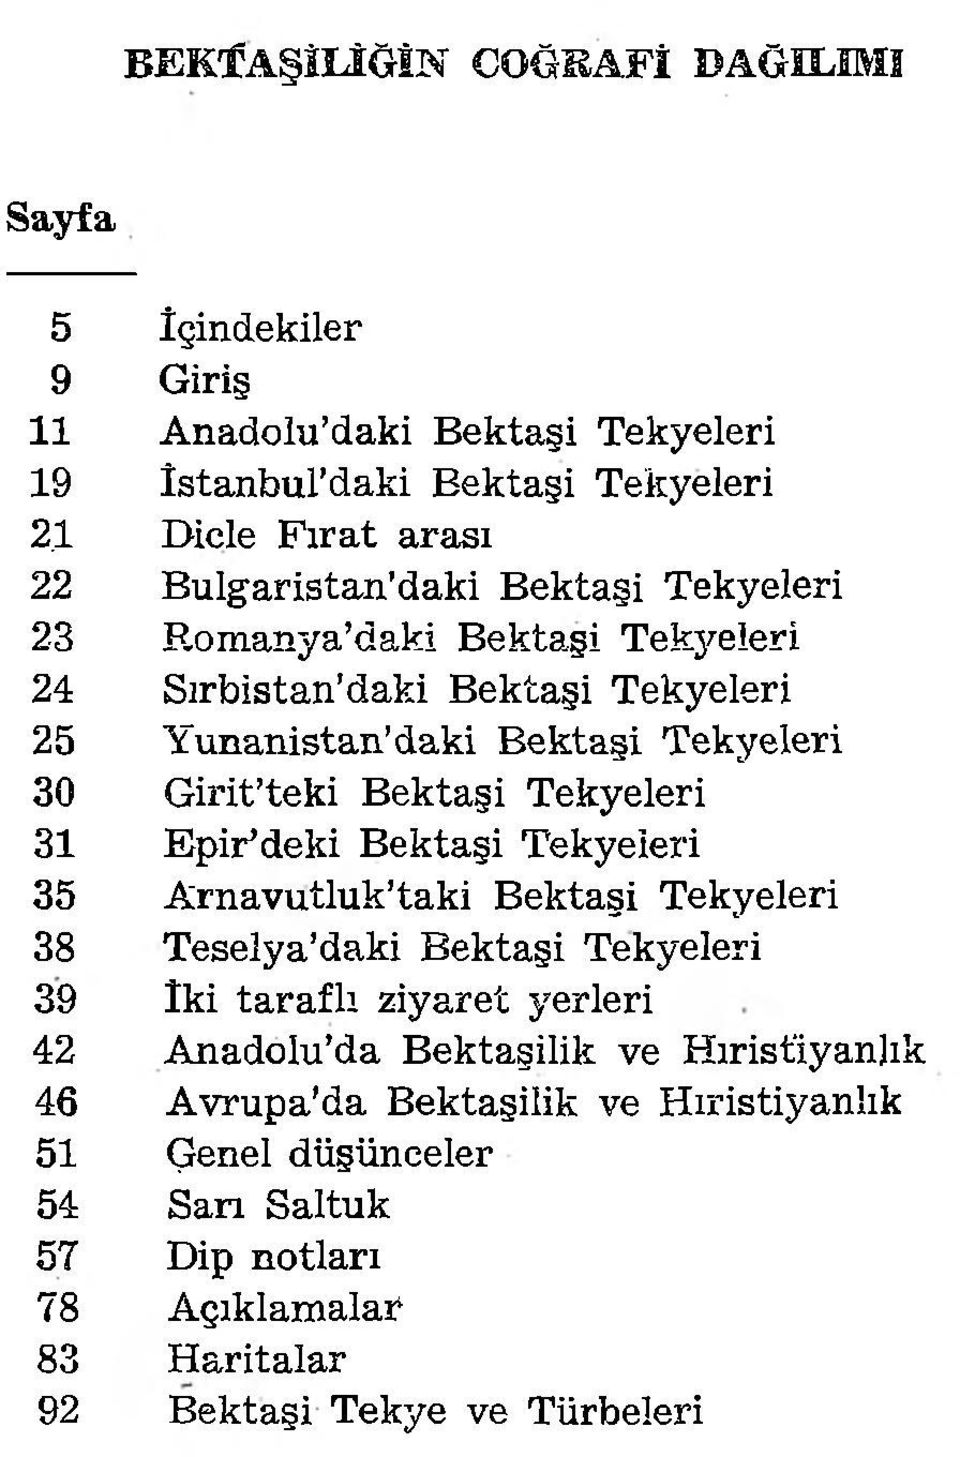 Tekyeleri 30 Girit teki Bektaşi Tekyeleri 31 Epir deki Bektaşi Tekyeleri 35 Arnavutluk taki Bektaşi Tekyeleri 38 Teselya daki Bektaşi Tekyeleri 39 iki taraflı